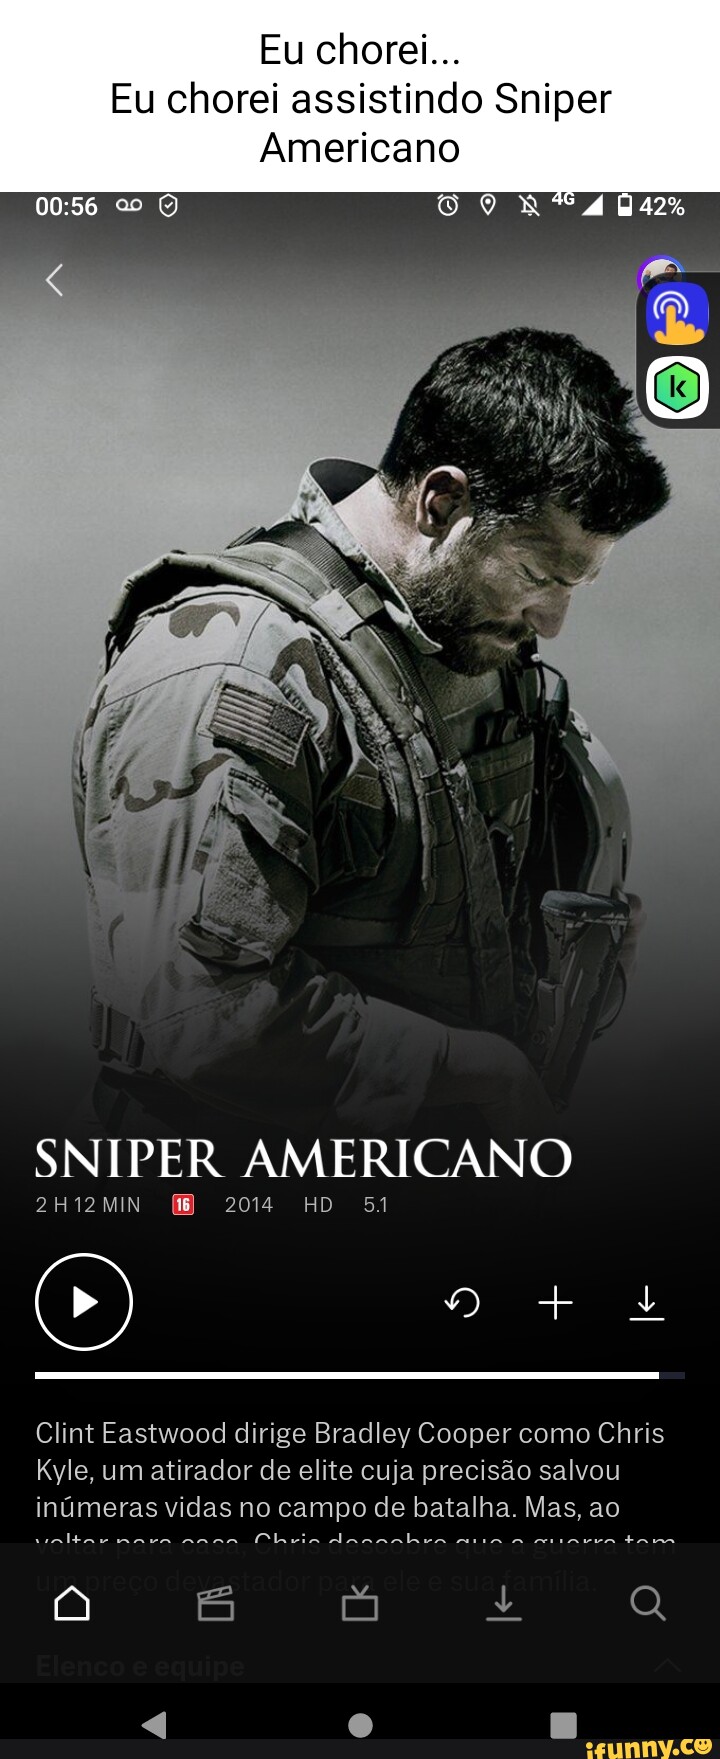 Sniper Americano (Em Portugues do Brasil) by Chris Kyle